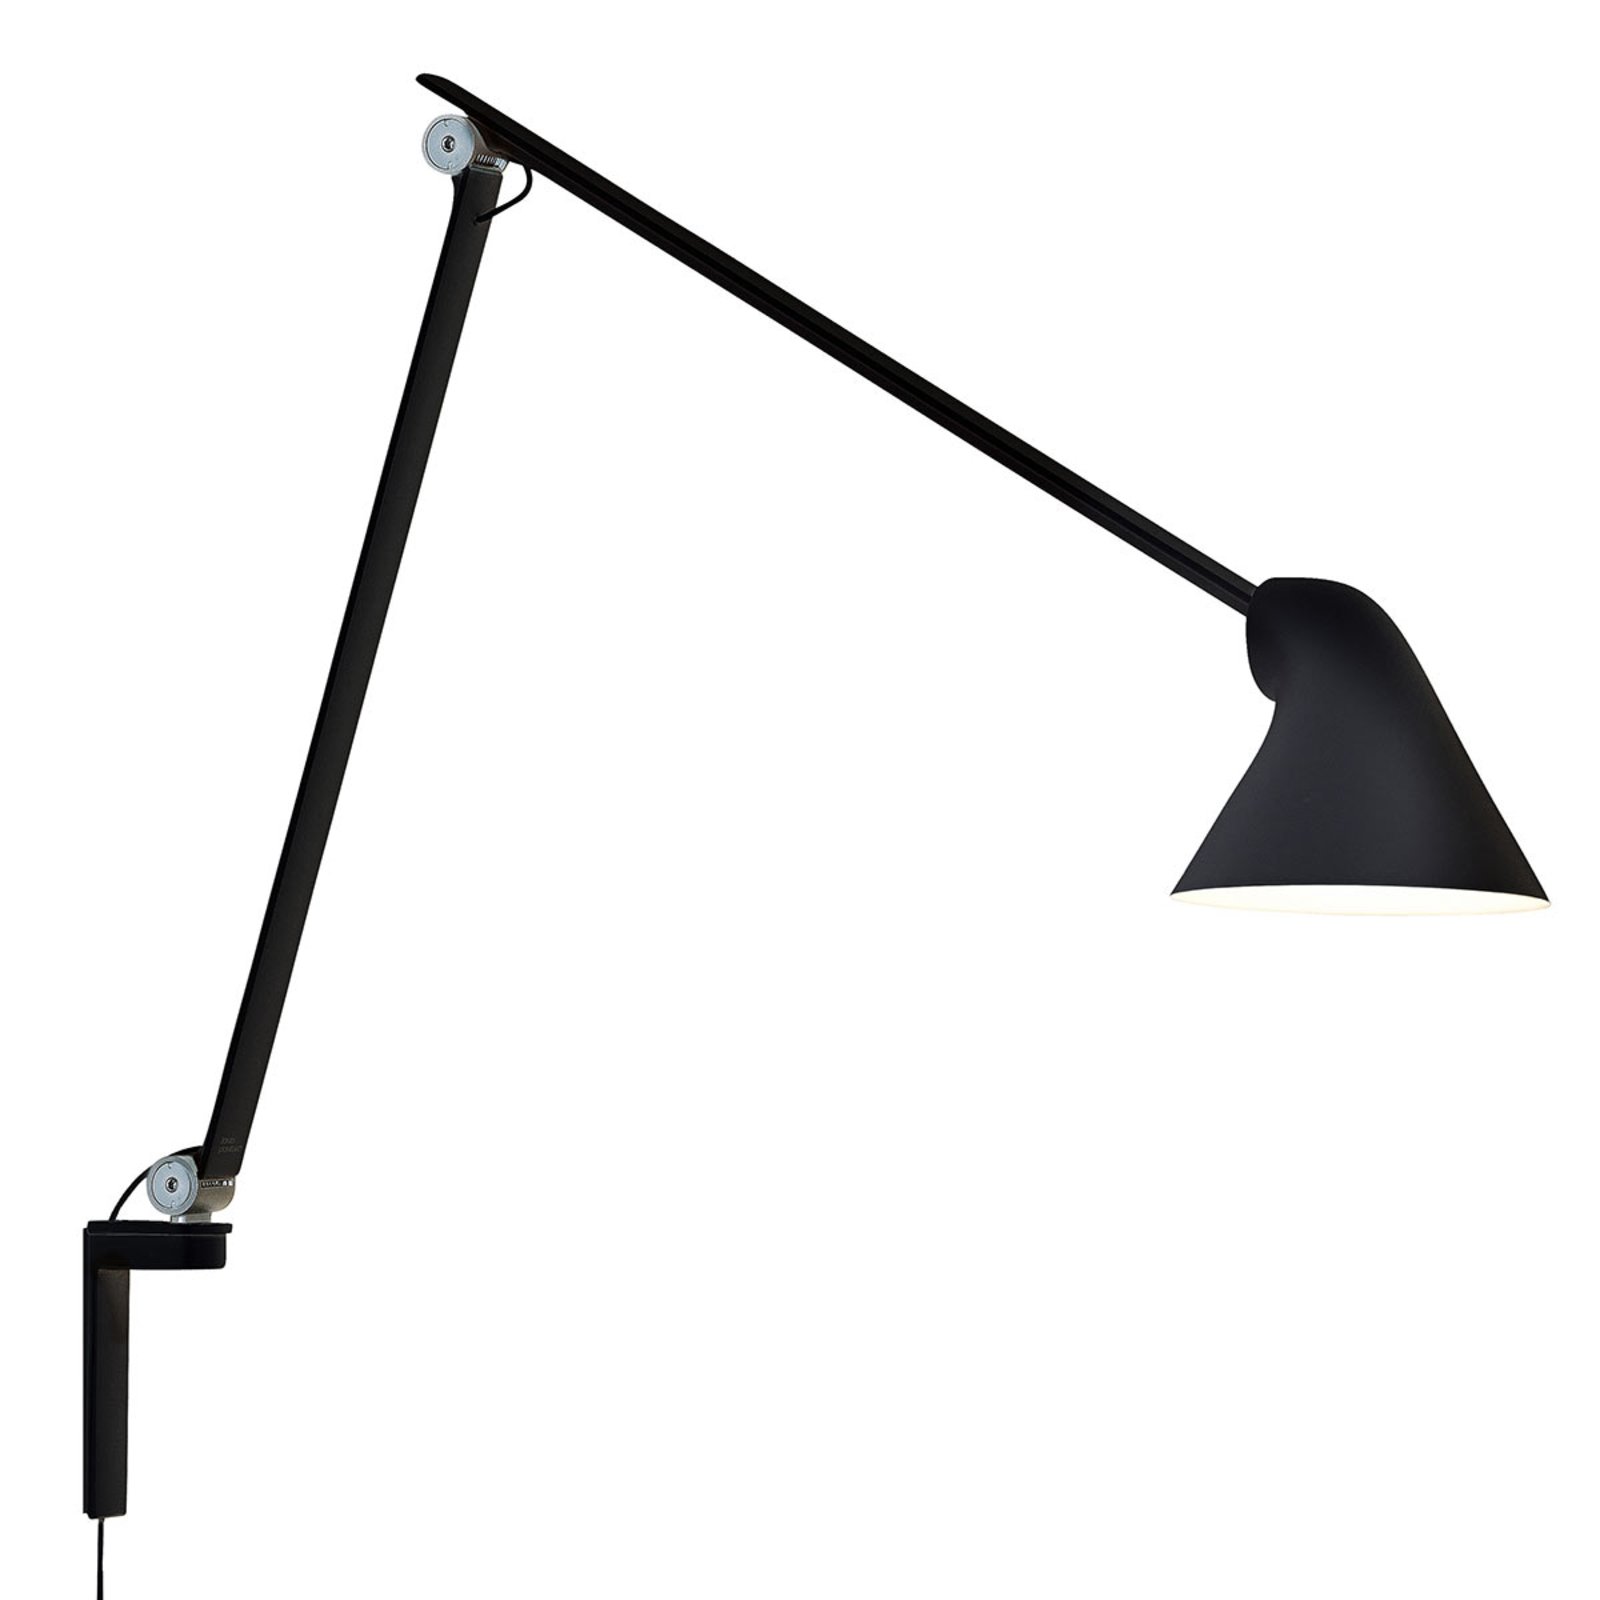 Louis Poulsen LED wandlamp met lange arm | Lampen24.nl